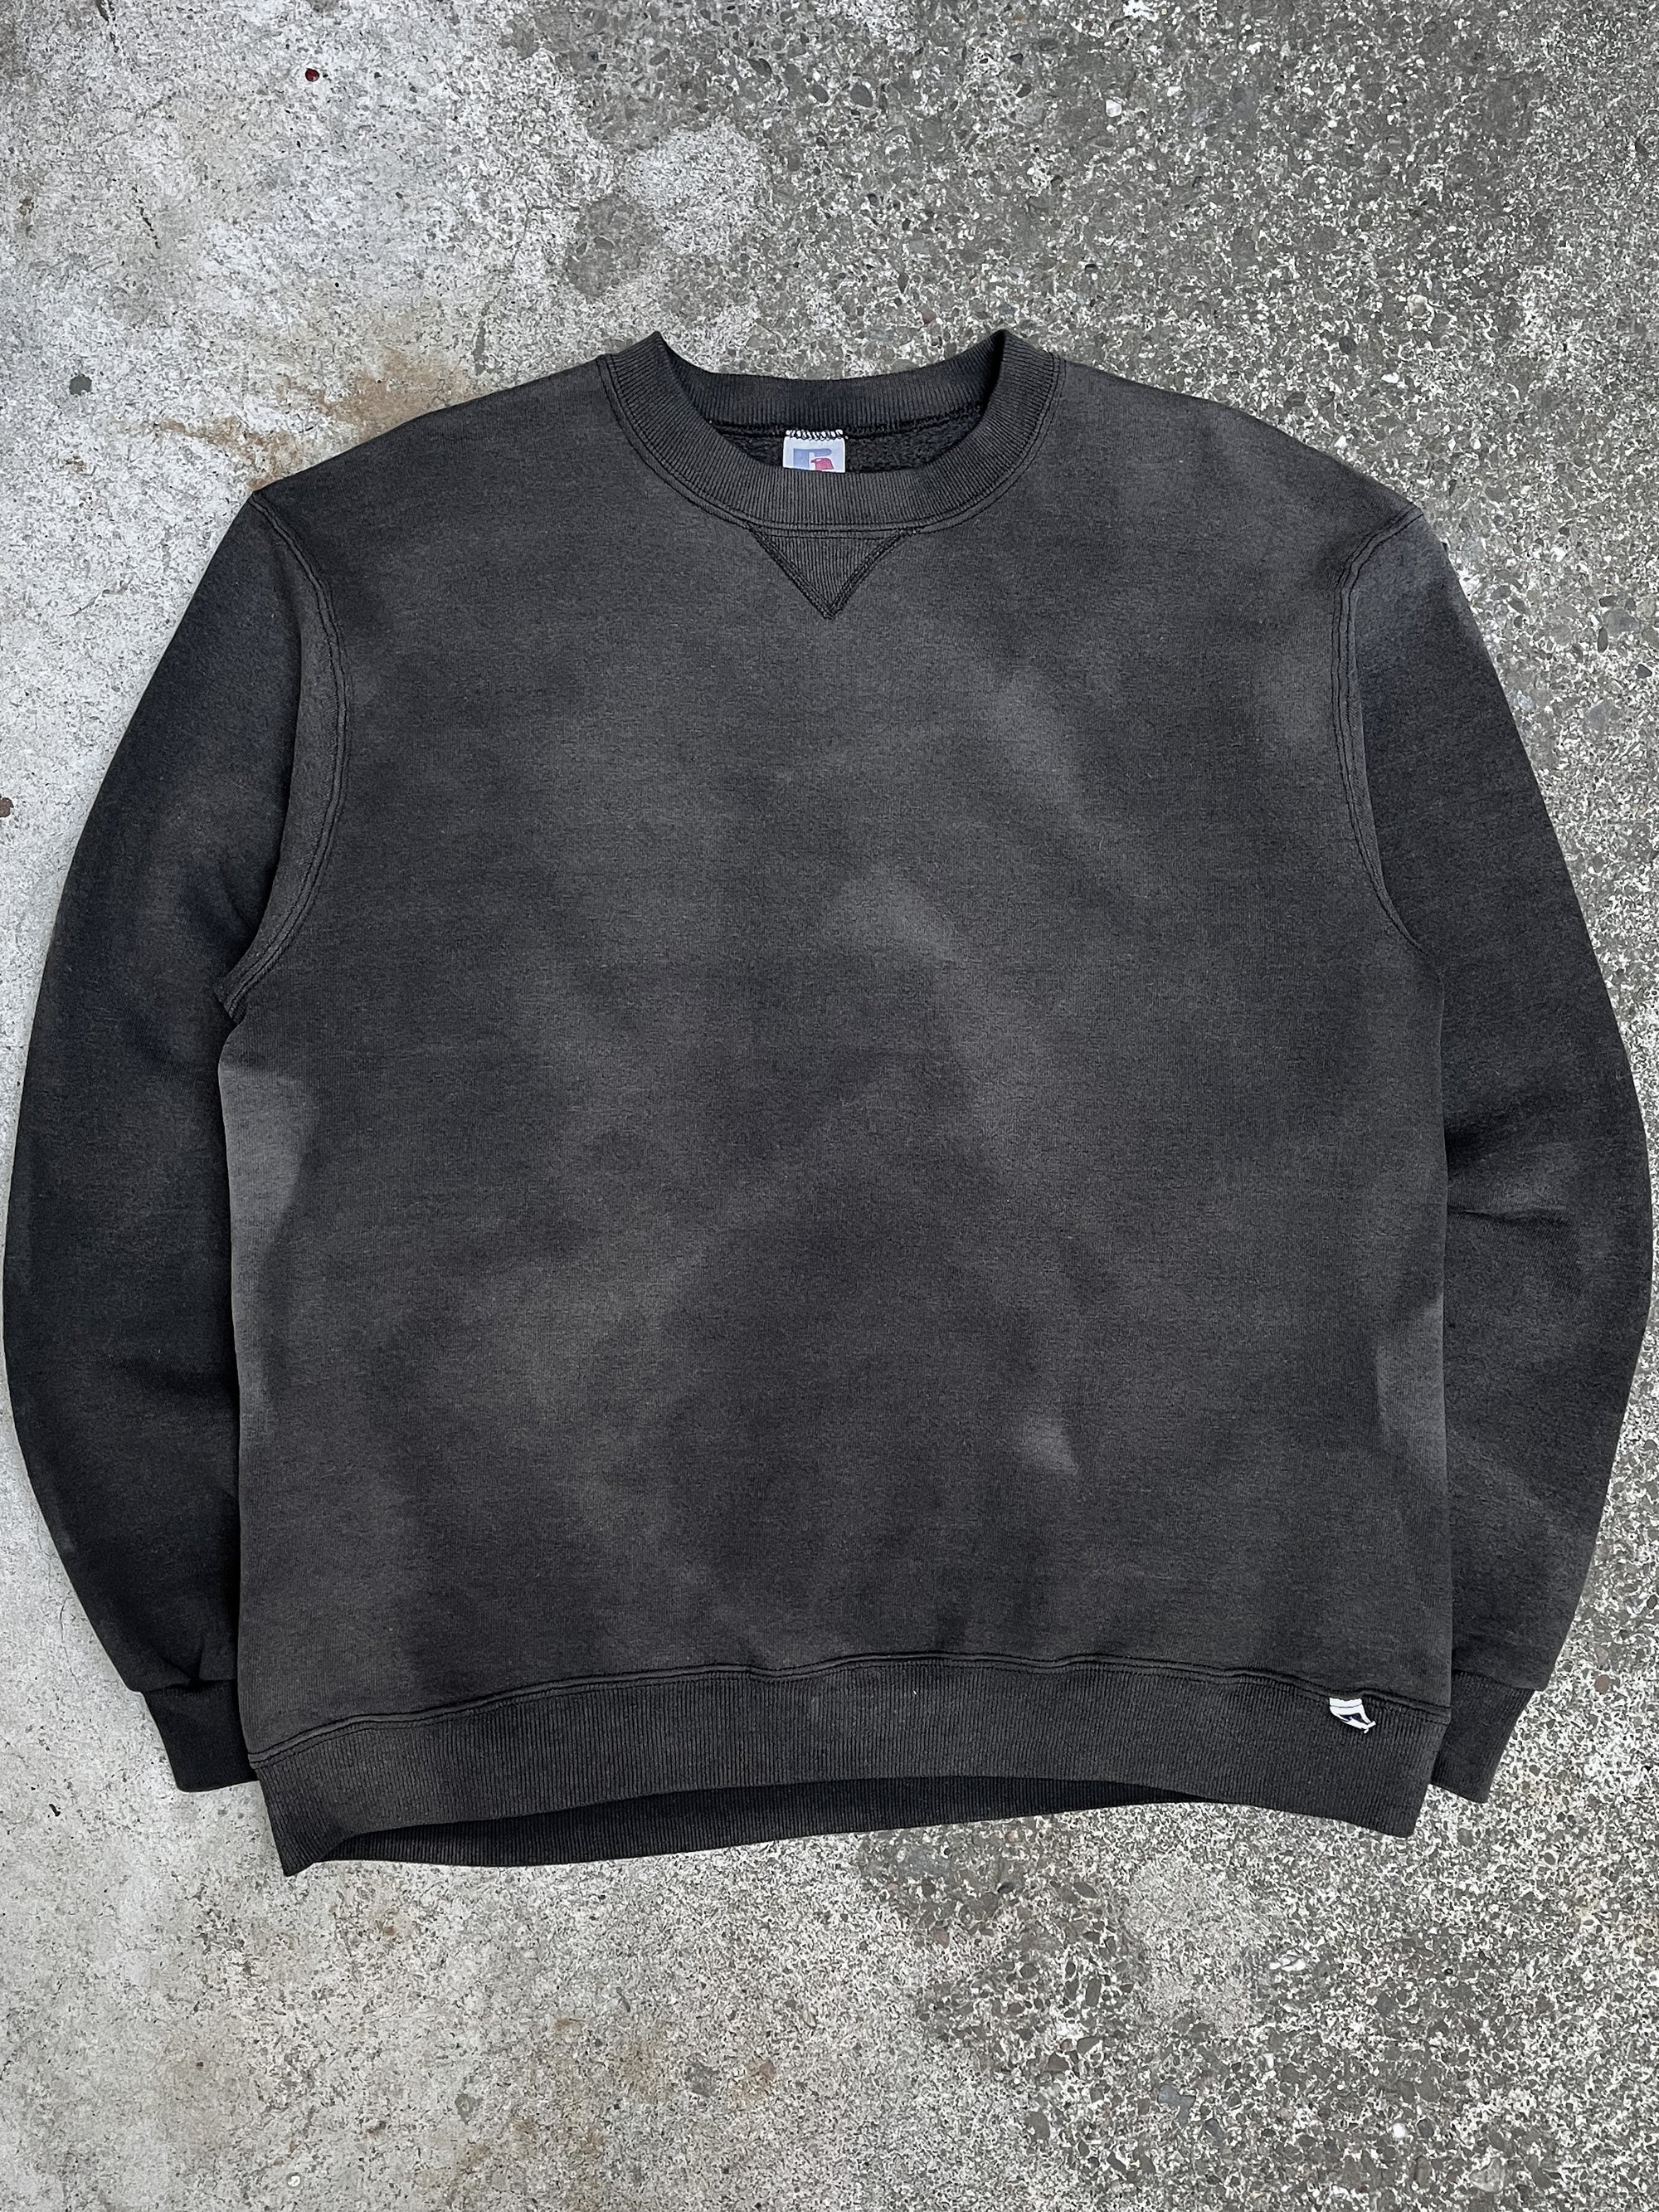 1980s Russell Sun Faded Black Blank Sweatshirt (L)